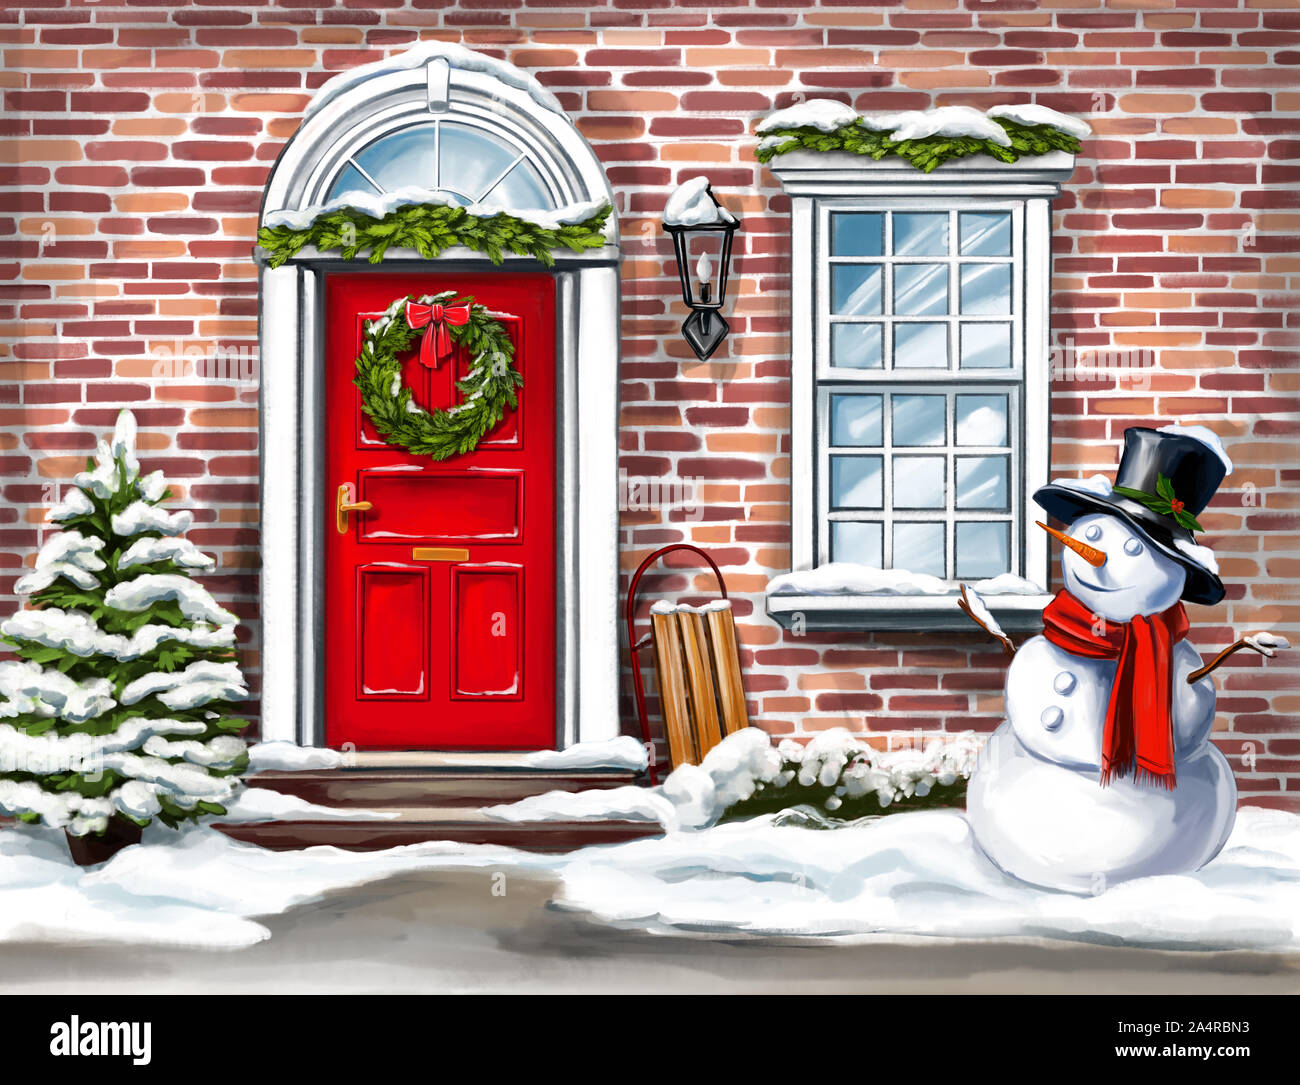 Weihnachten Home Dekoration, Weihnachten Kranz an der Tür im Winter und  Schneemann, Weihnachten Grußkarte, Art Illustration mit Aquarellfarben  gemalt Stockfotografie - Alamy